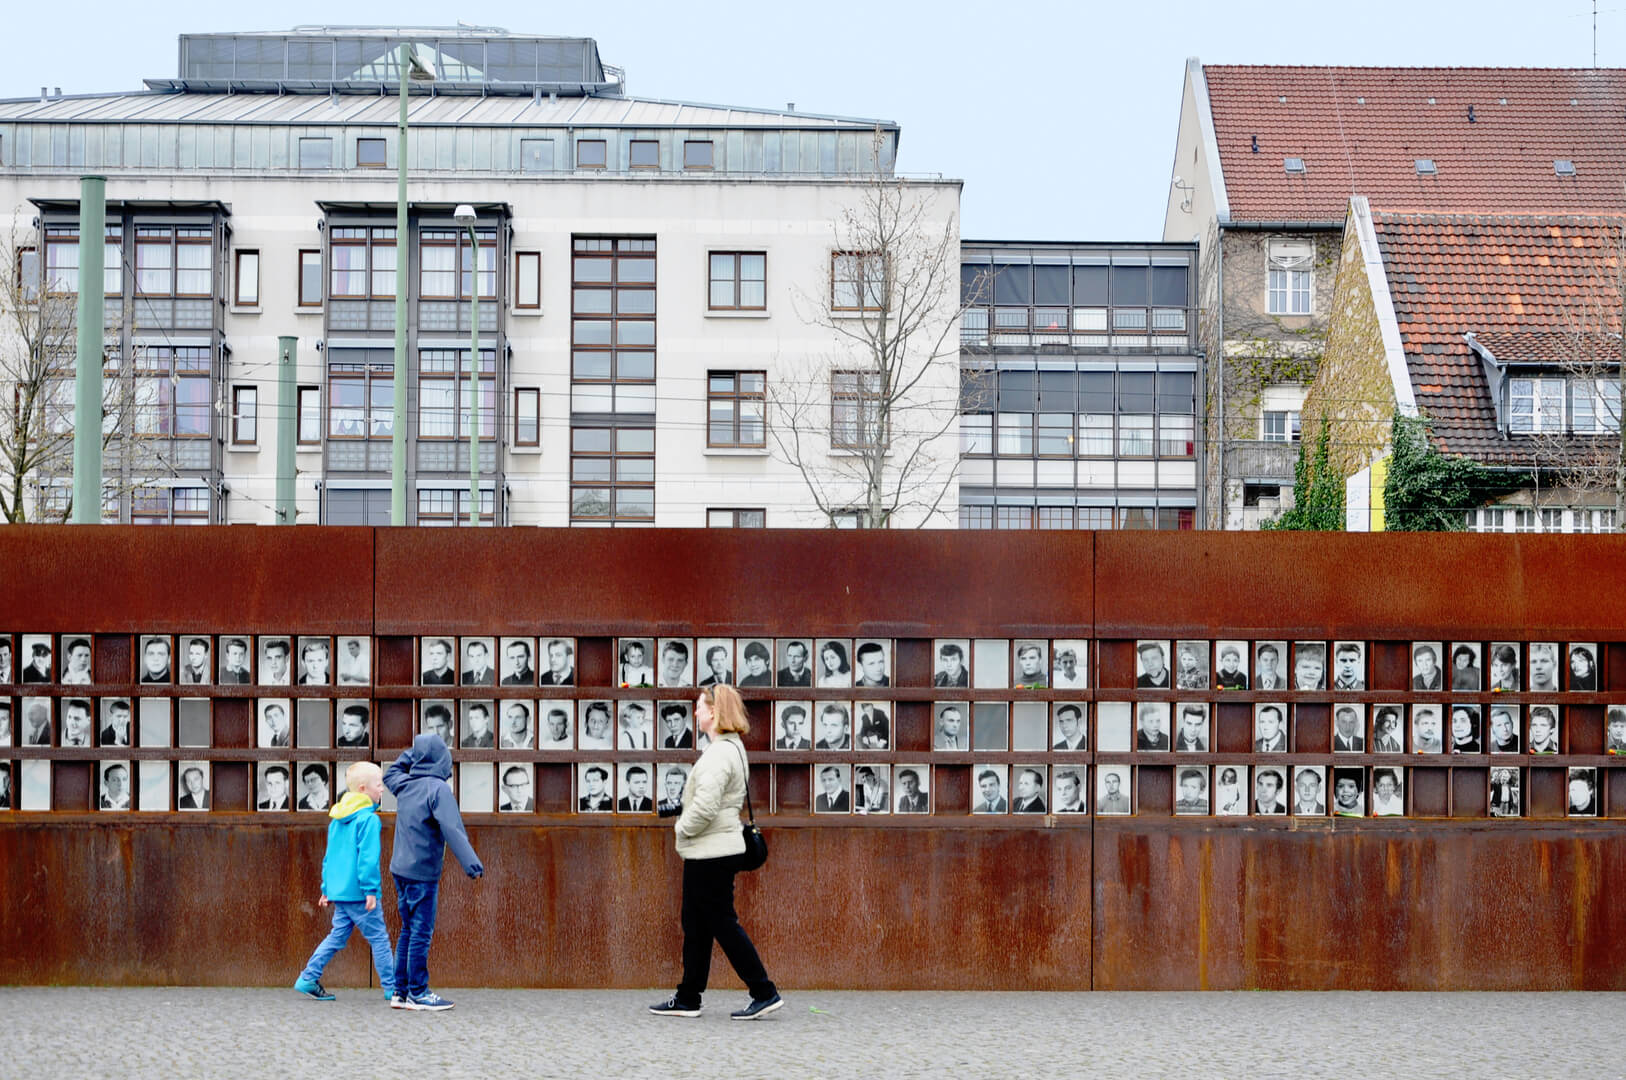 Памятник Берлинской стене с фотографиями людей и посетителей